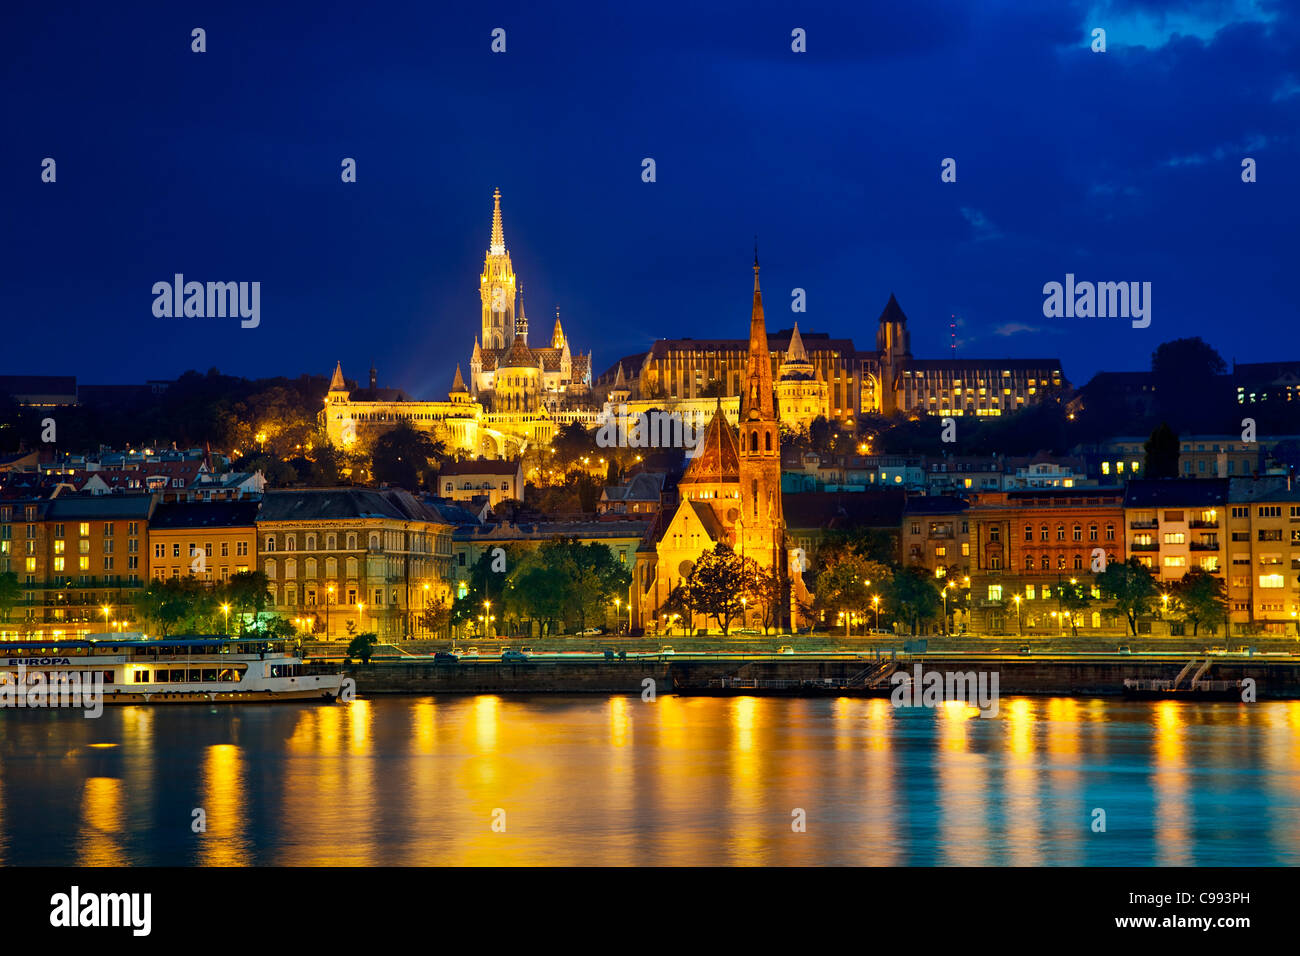 Europa, Europa central, Hungría, Budapest, la Iglesia Matías y la iglesia calvinista en la noche Foto de stock